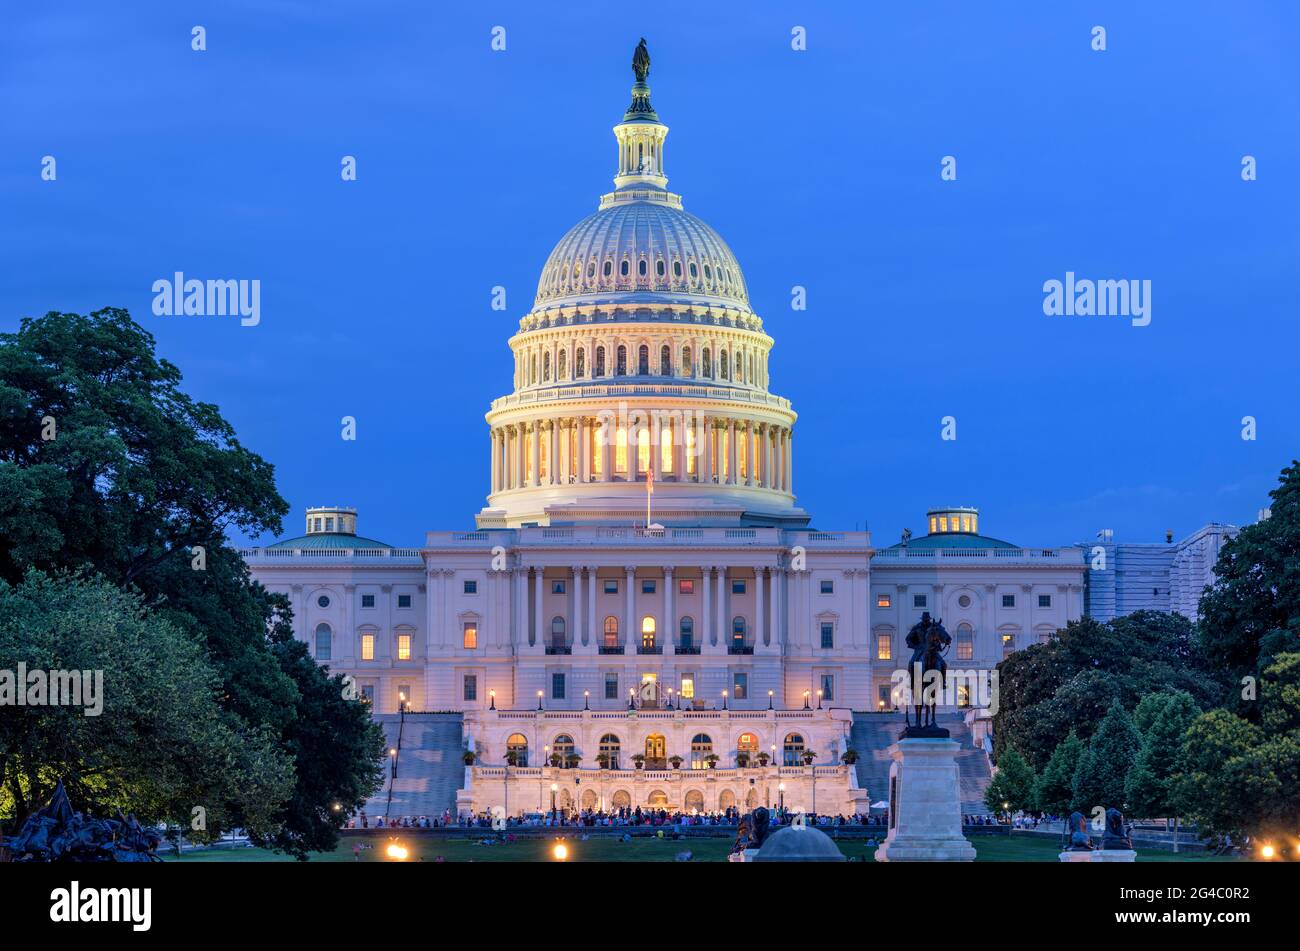 Noche de verano en Capitol Hill - Una vista al atardecer del lado oeste del edificio del Capitolio de los EE.UU., como un concierto de verano en frente, Washington, D.C., EE.UU. Foto de stock